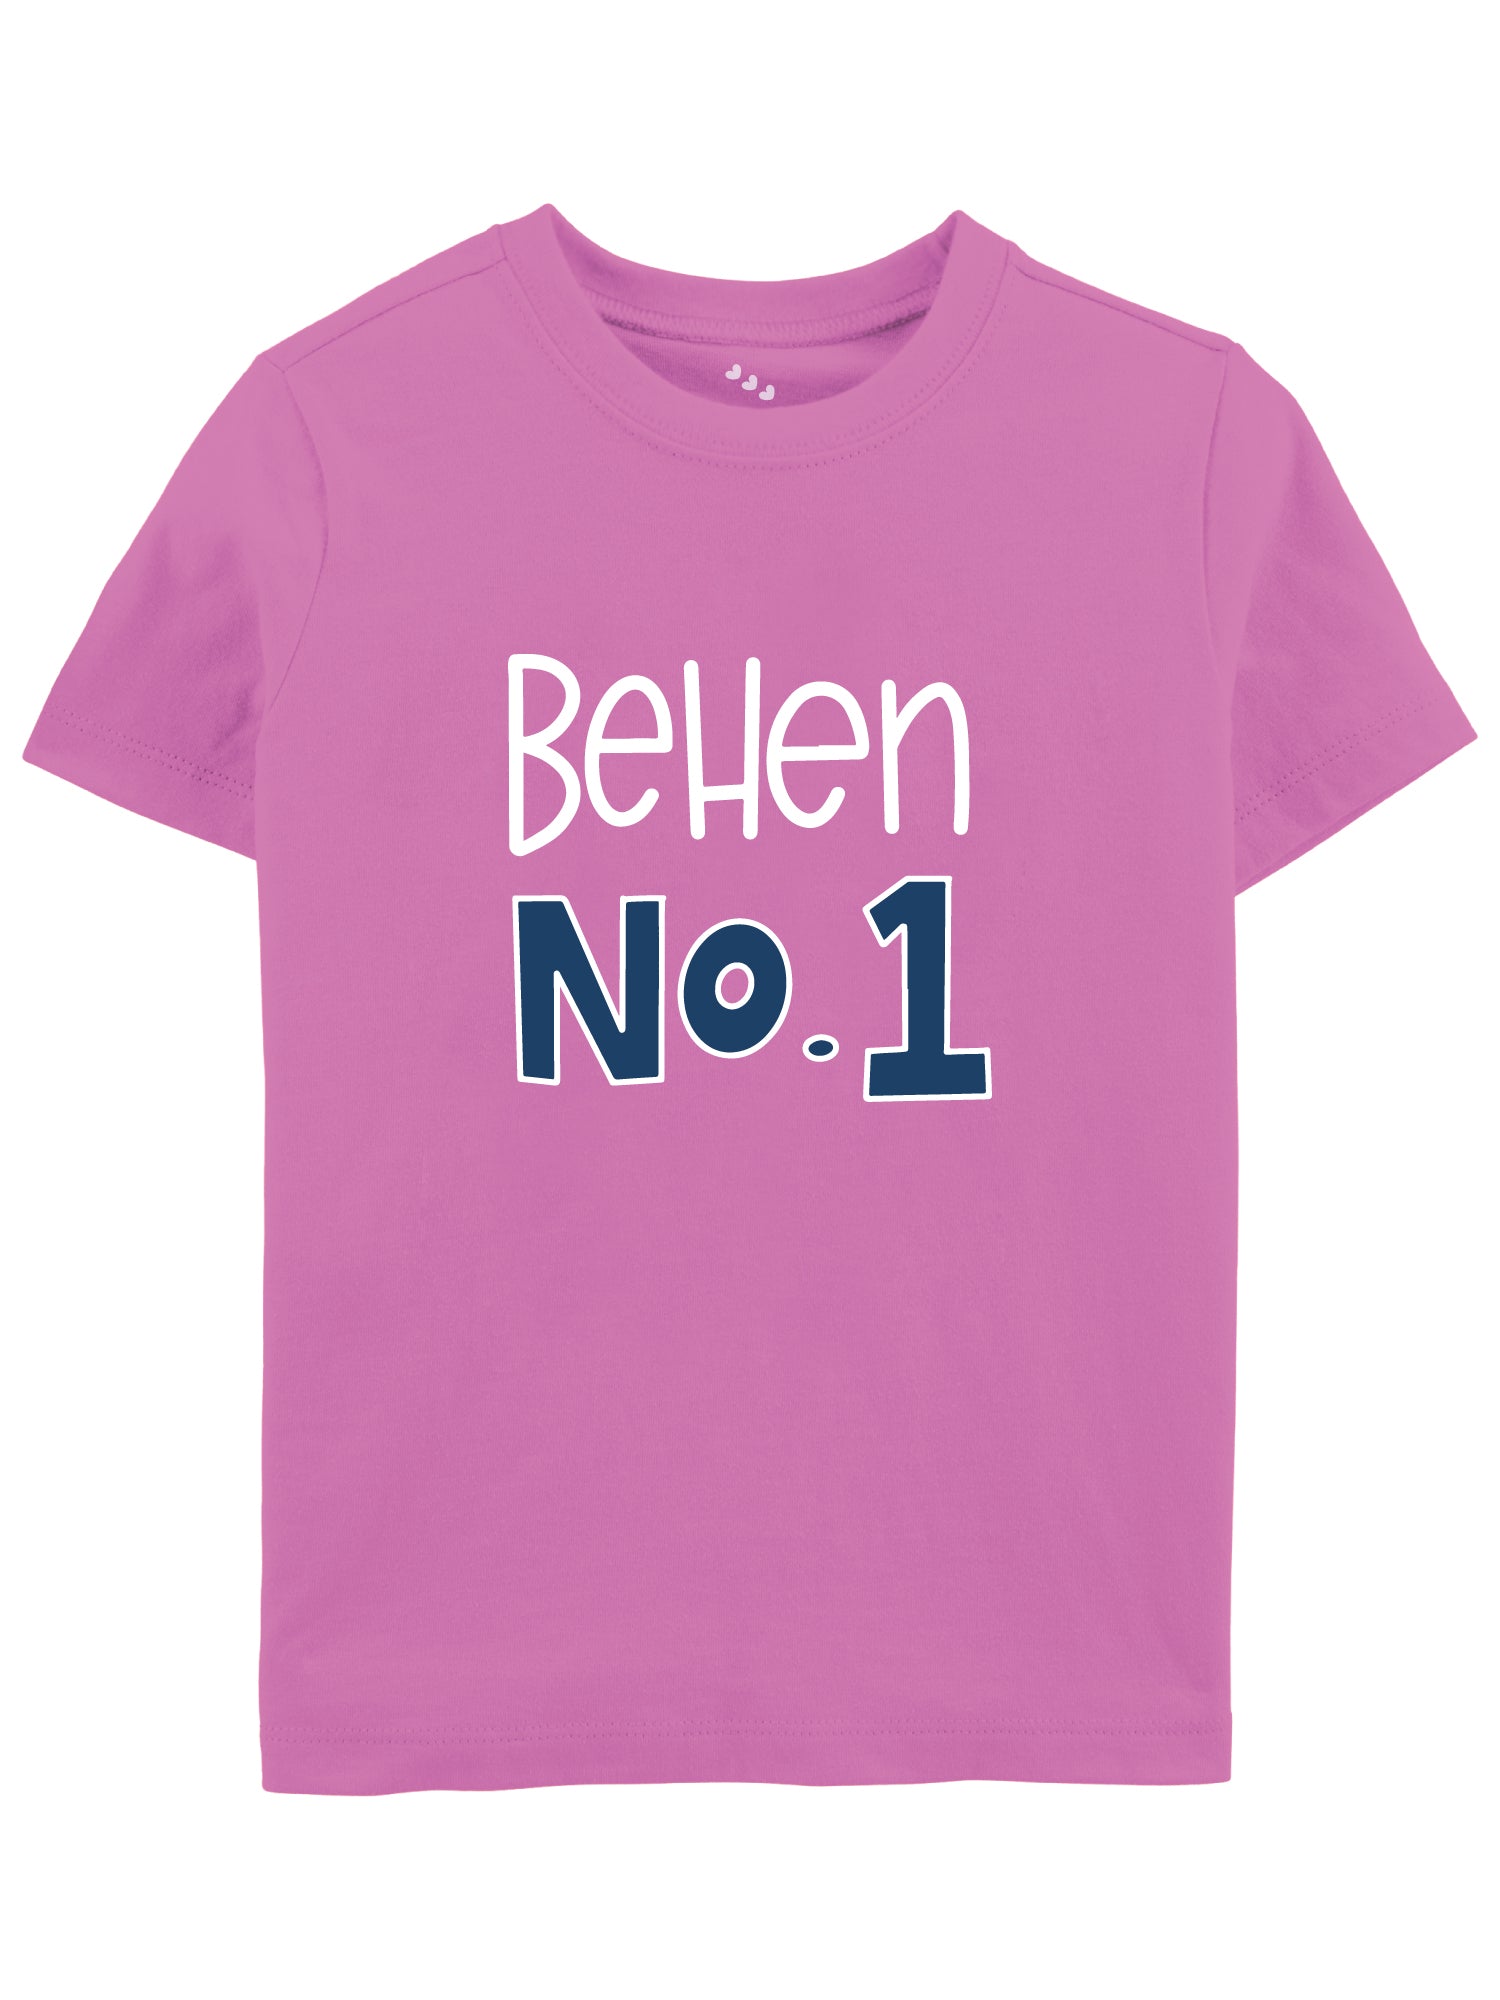 Behen No 1 - Tshirt